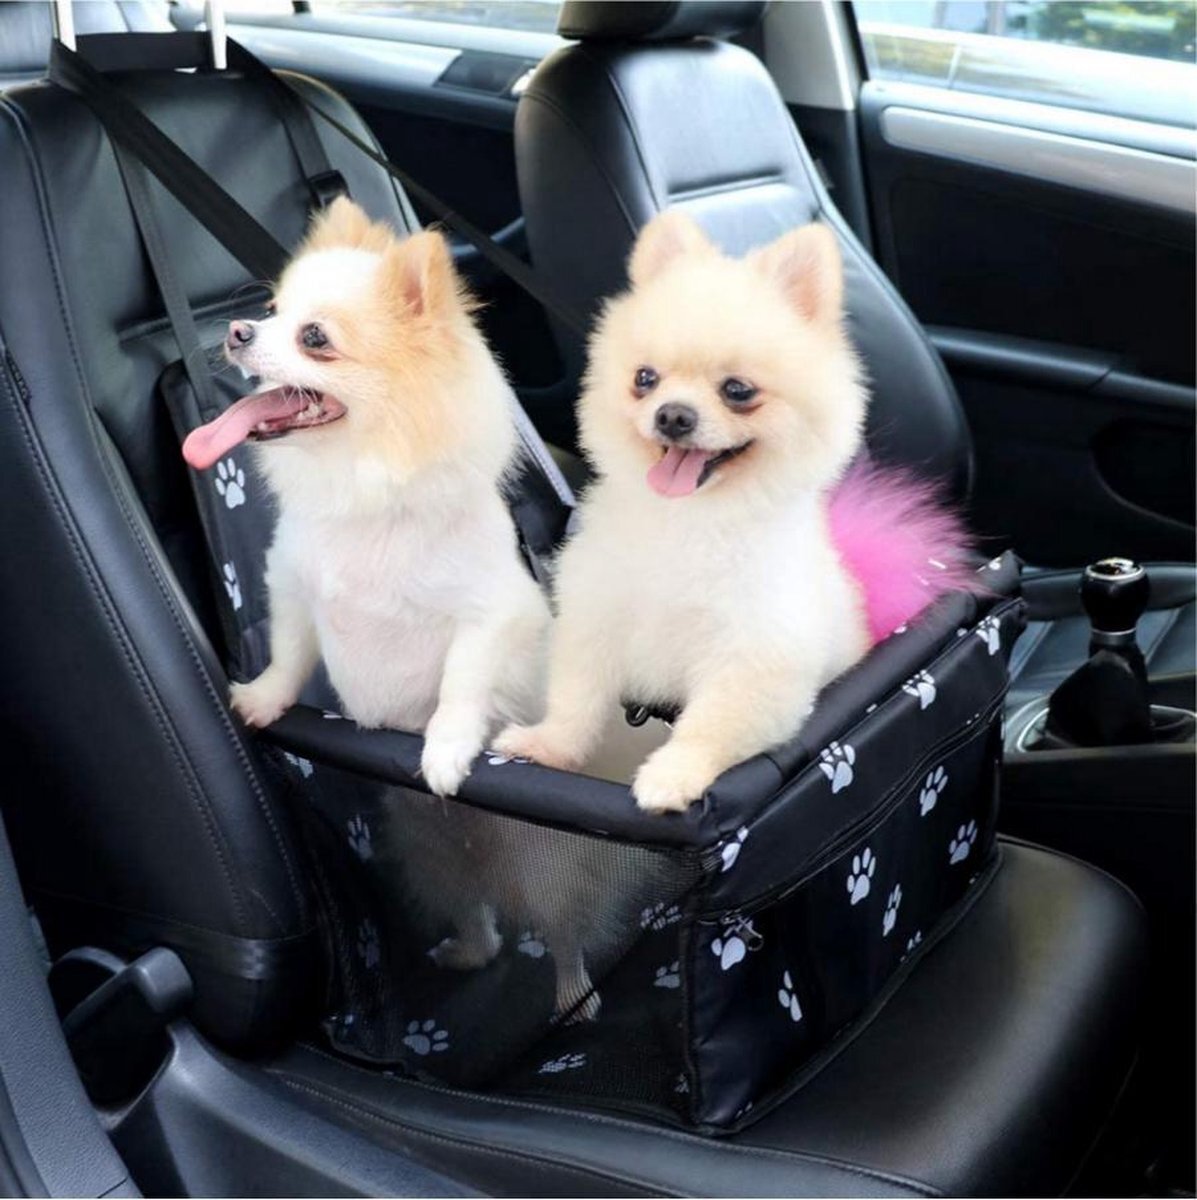 De Blaffende Kat Opvouwbare Autostoel Hond Pootjespatroon - Hondenmand auto - Autobench voor hond - Hondenstoel auto zwart, wit